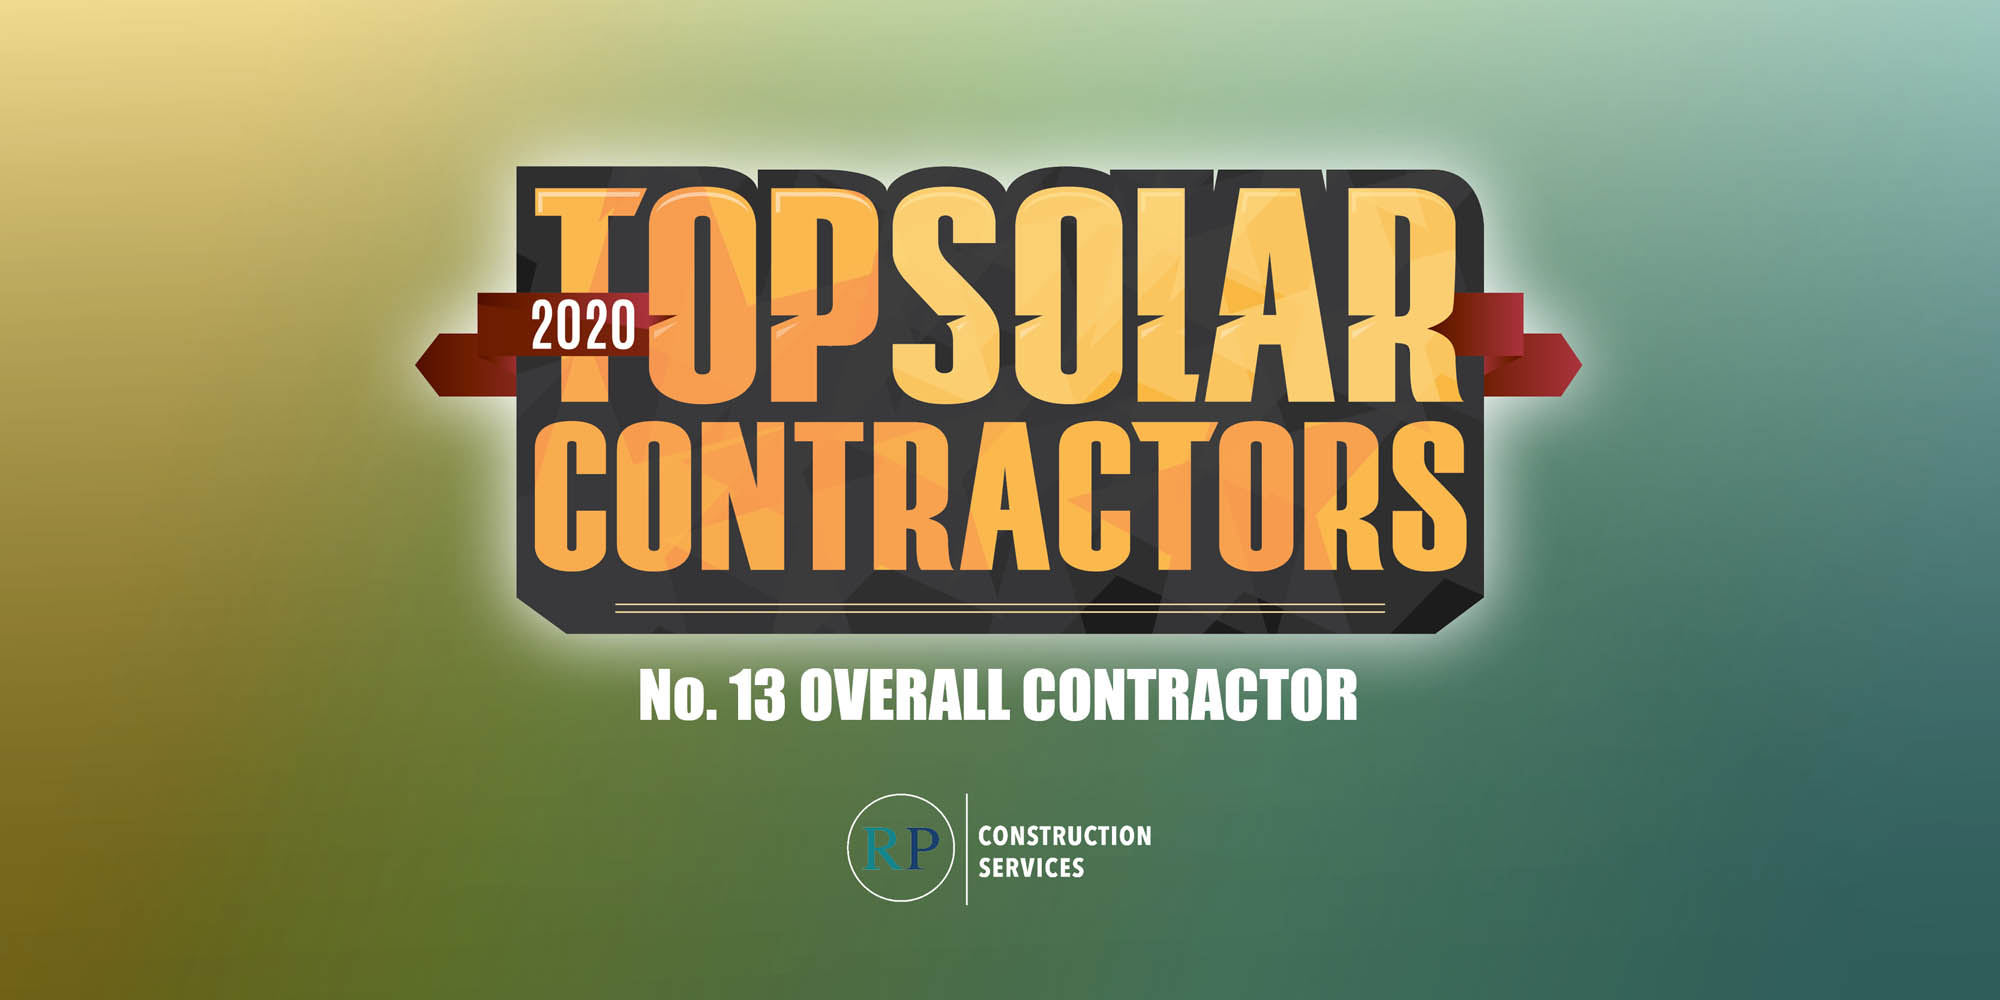 Top Solar Contractor List 2020